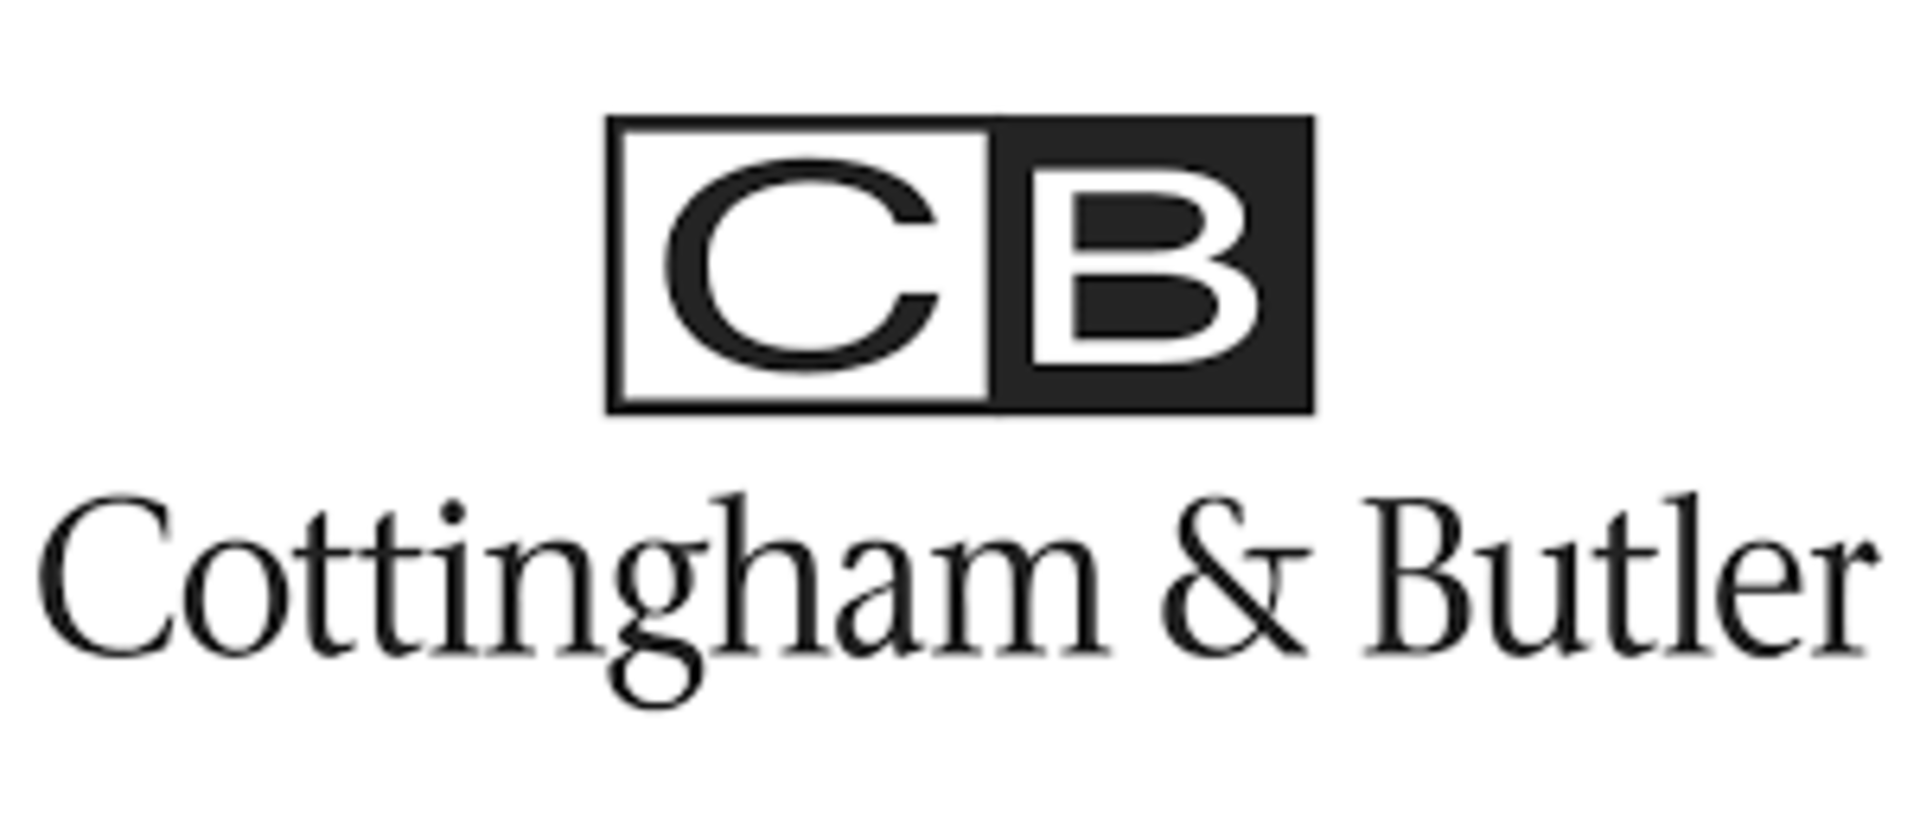 Cottingham & Butler Logo